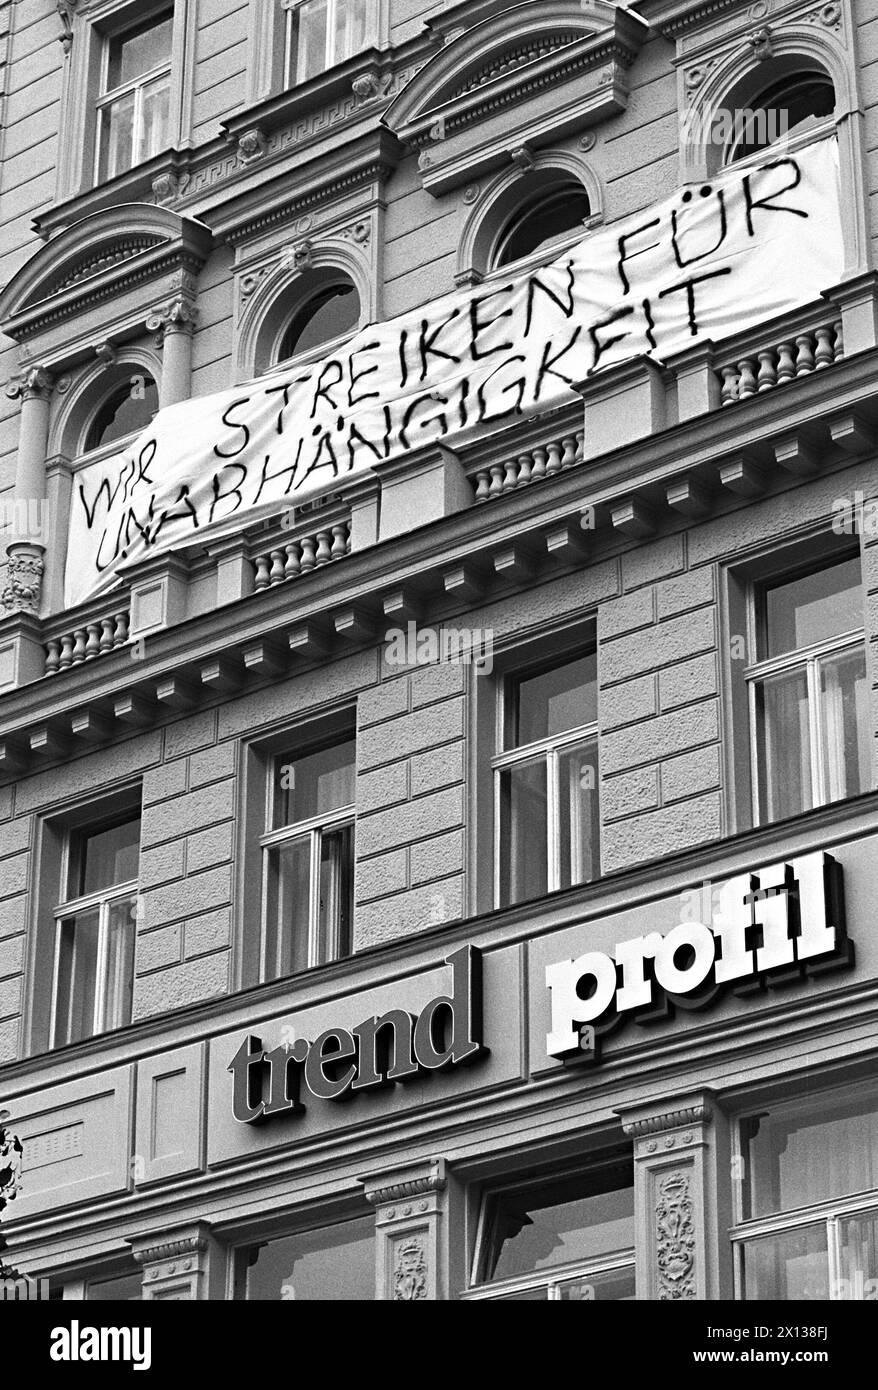 Vienna il 27 settembre 1991: Streik indefinito sulle riviste austriache "trend" e "profil" per una maggiore indipendenza (come scritto sulla facciata trasparente). - 19910927_PD0004 - Rechteinfo: Diritti gestiti (RM) Foto Stock